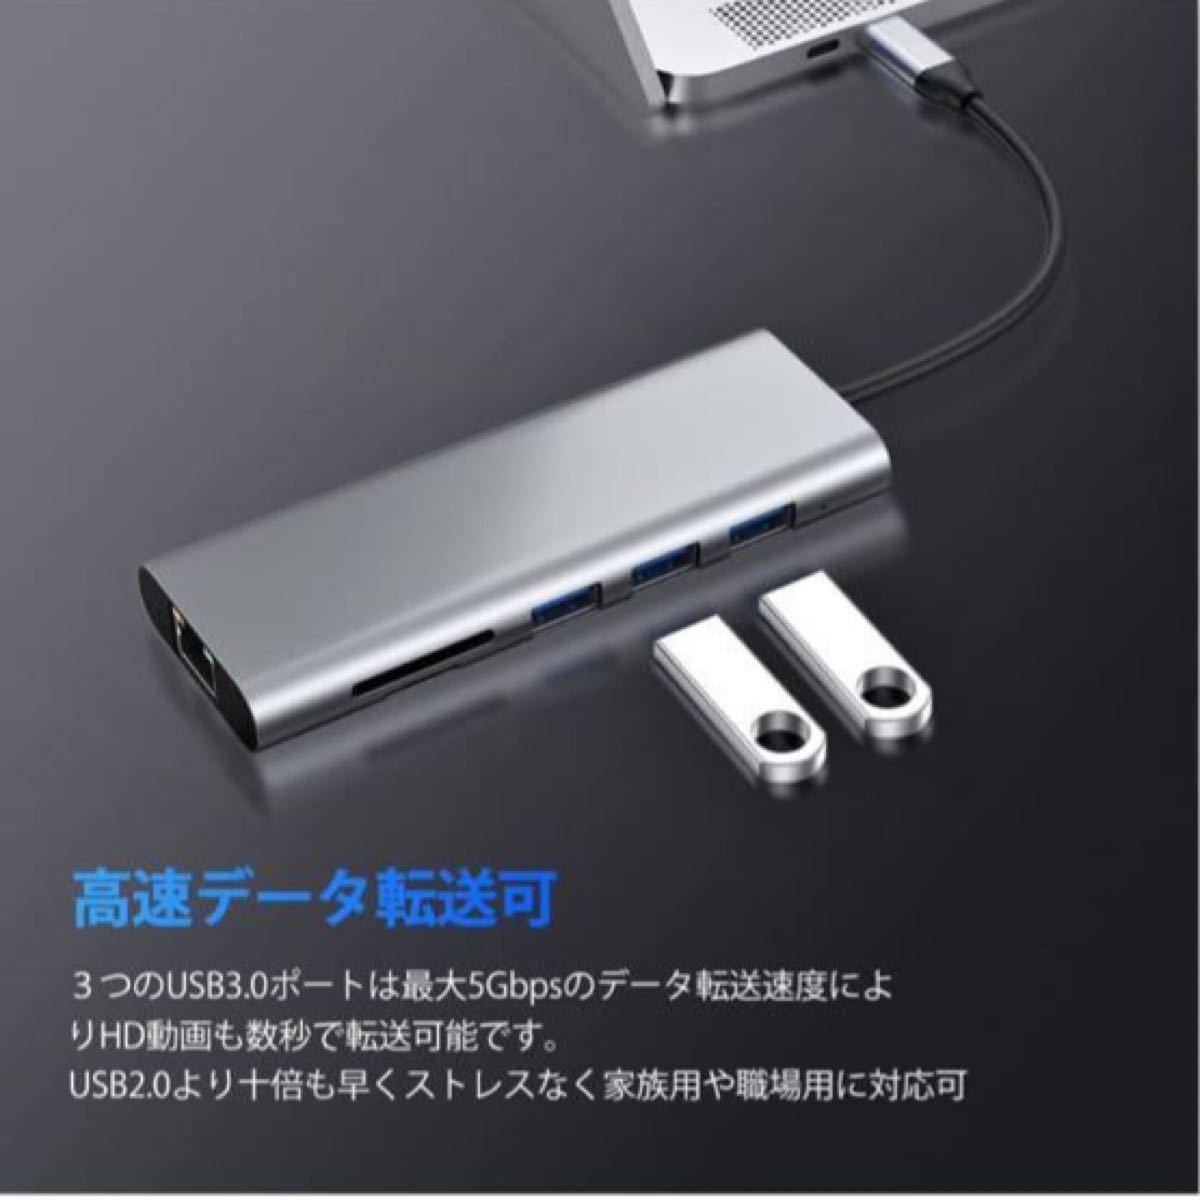 USB C ハブ 7-IN-1 Type C ハブ LANポート付き 変換アダプタ 4K HDMI 超高速 USB3.0 